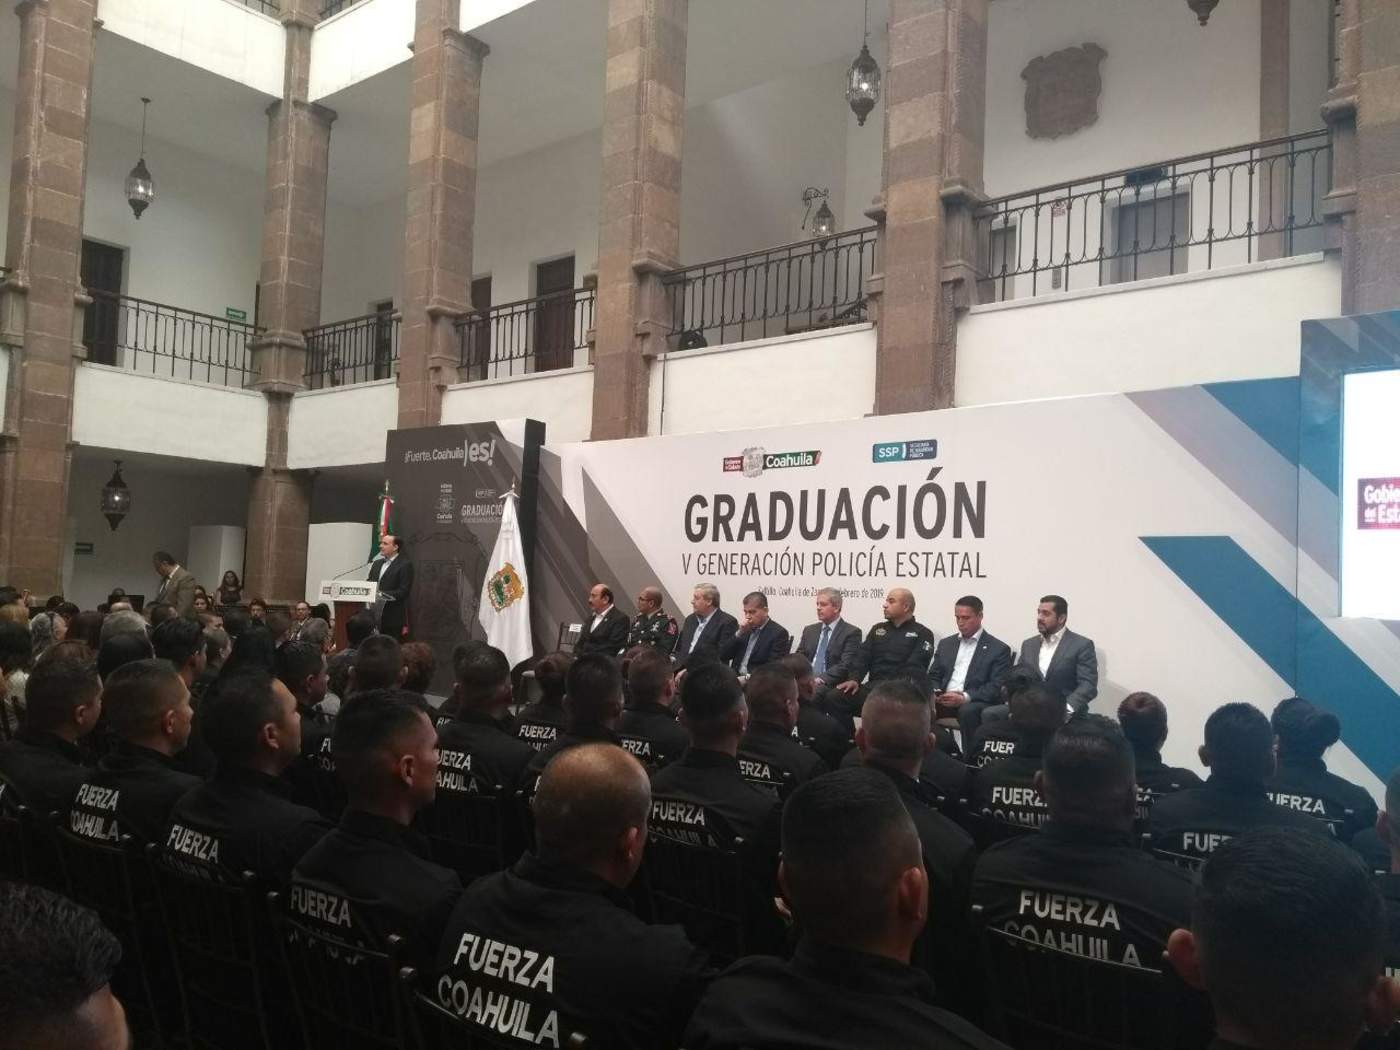 La ceremonia de graduación se llevó a cabo a las 10 de la mañana en las instalaciones del Palacio de Gobierno en Saltillo. (EL SIGLO COAHUILA)